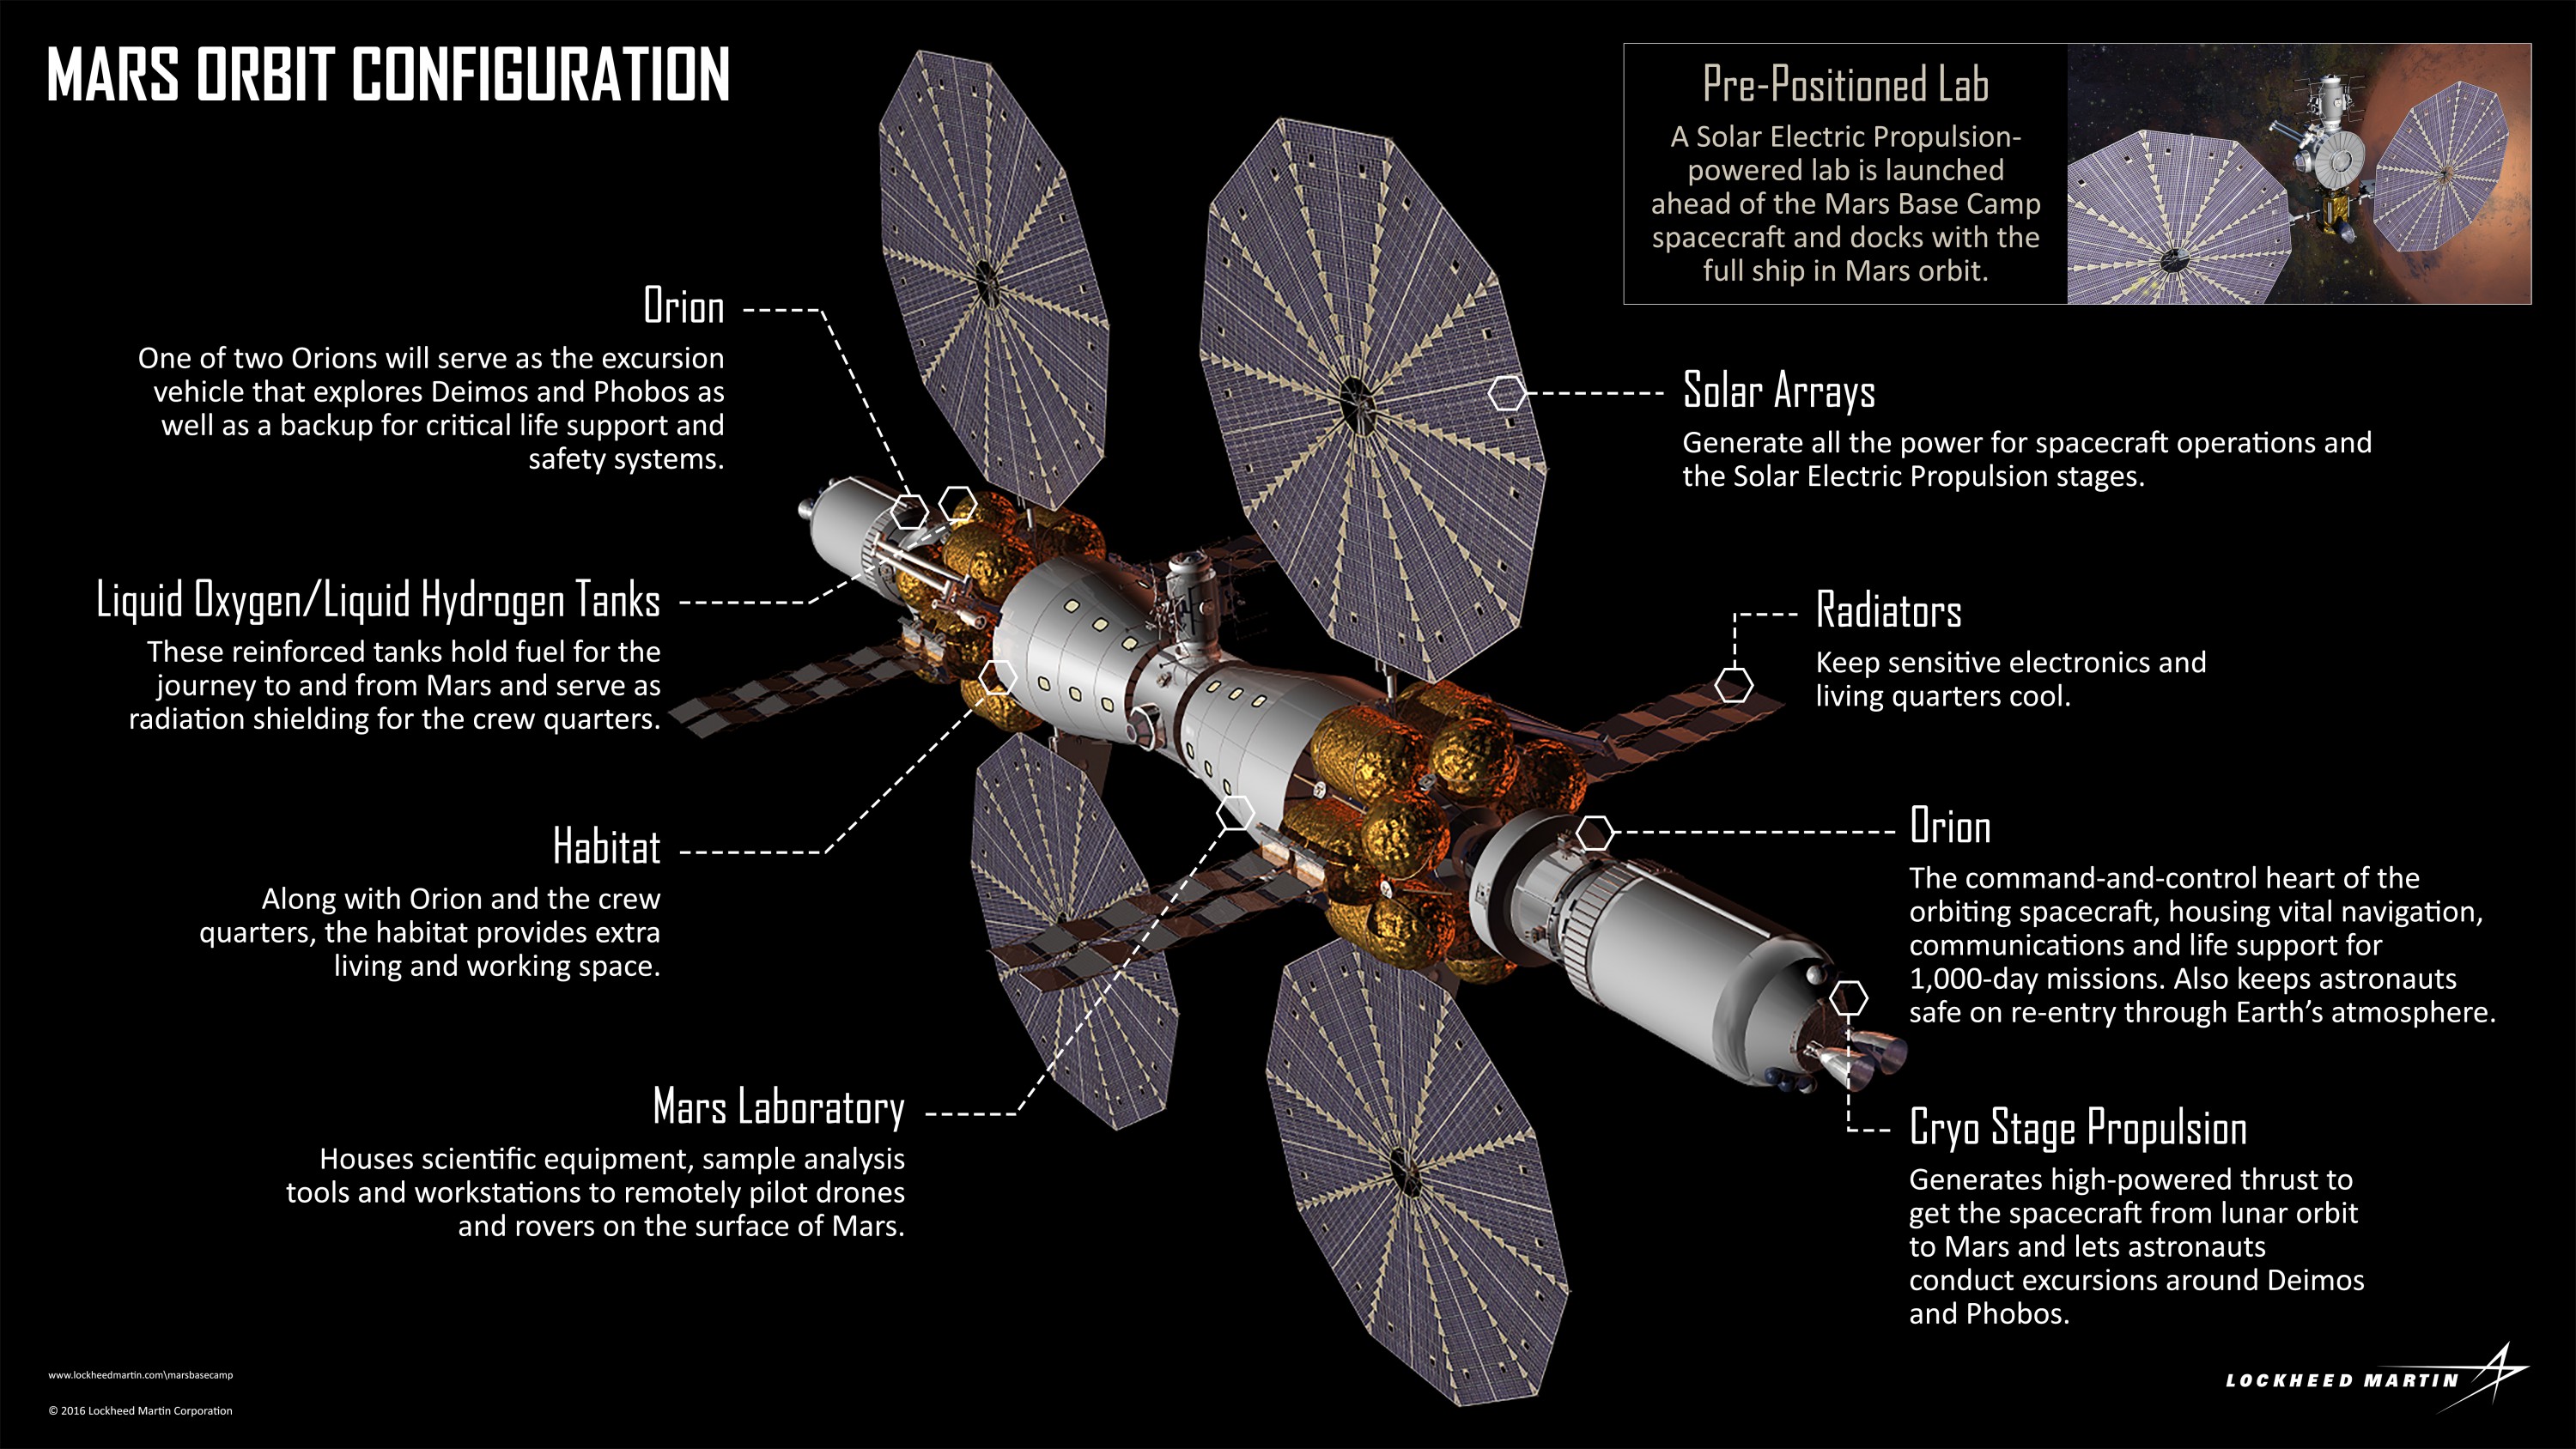 Не Маском единым: Lockheed Martin представила концепт орбитальной станции Mars Base Camp и пилотируемого спускаемого аппарата